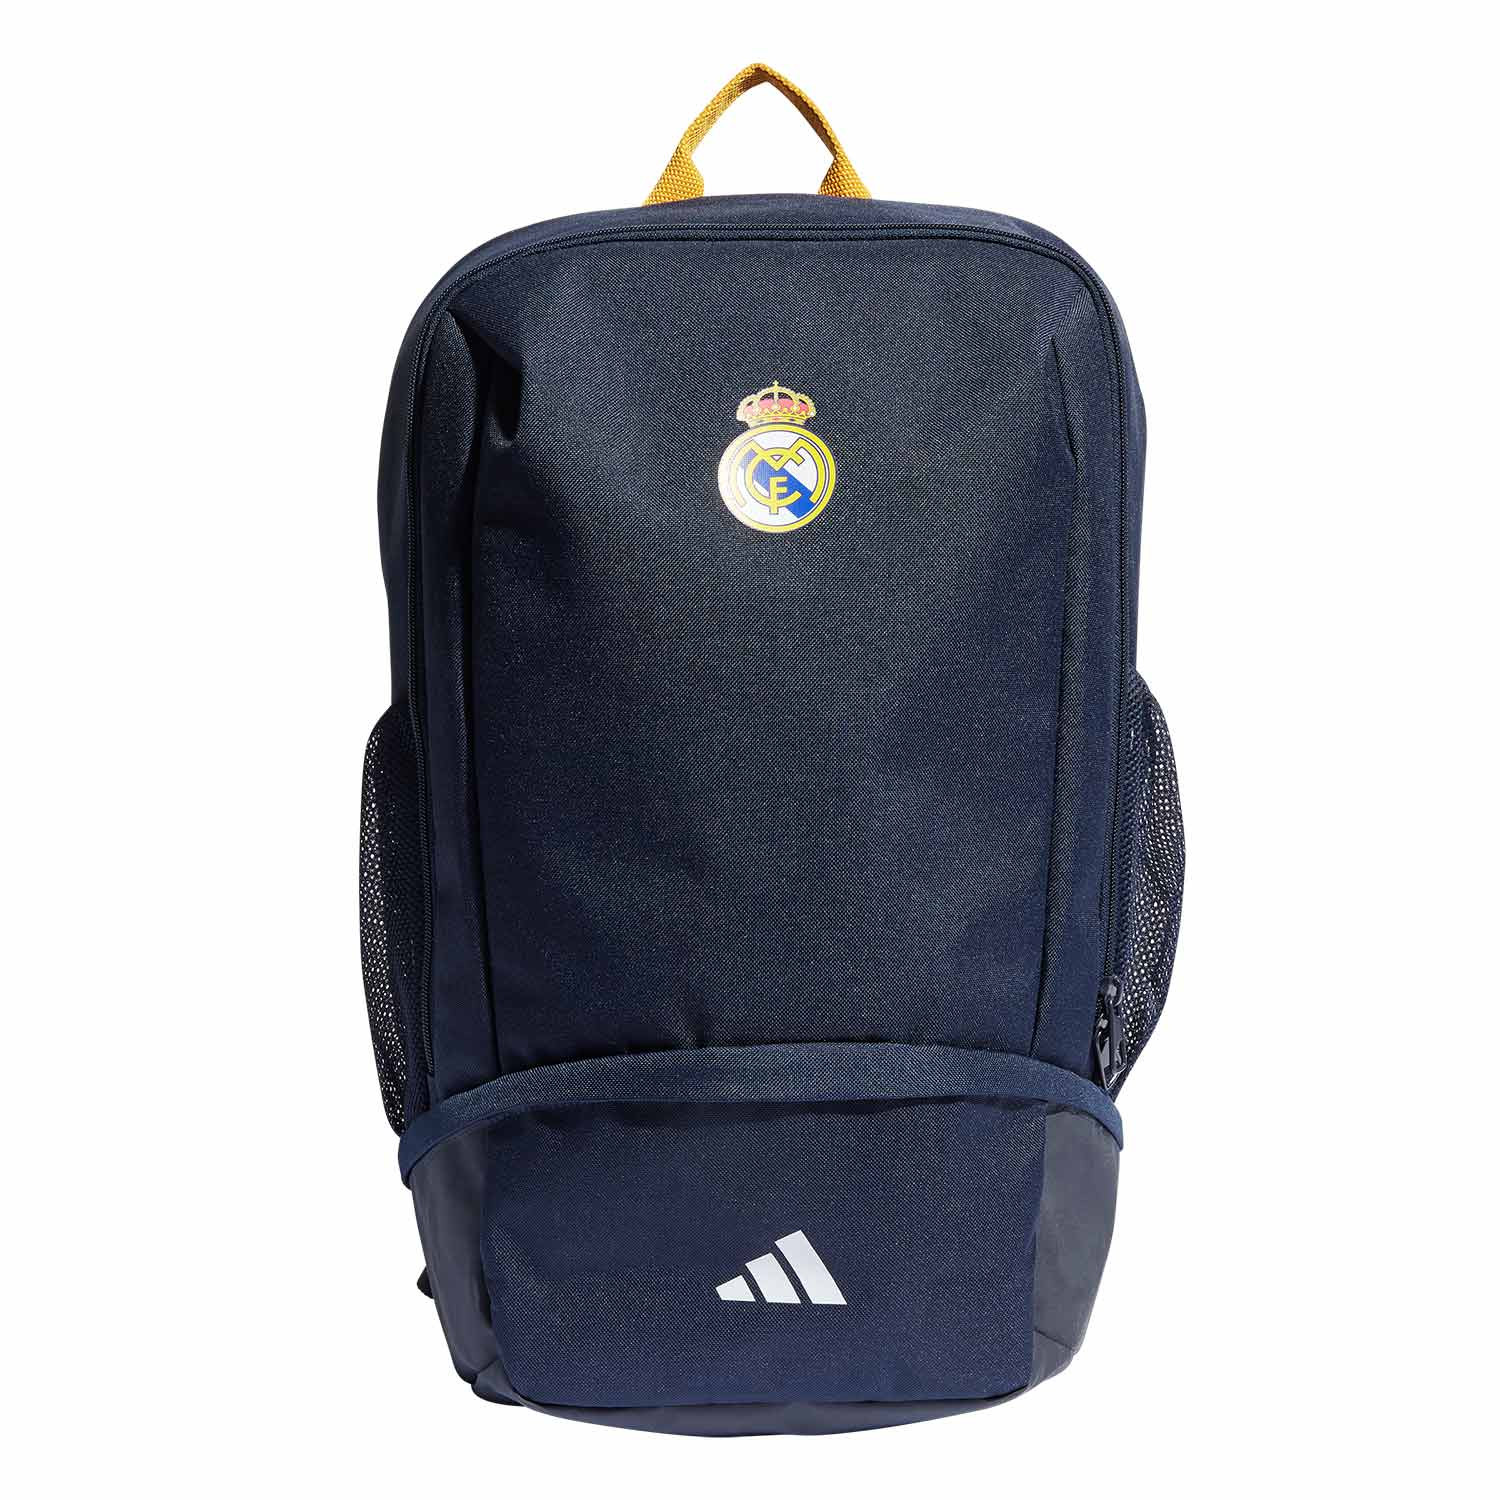 Comprar mochila Real Madrid para edades de 6 a 8 años